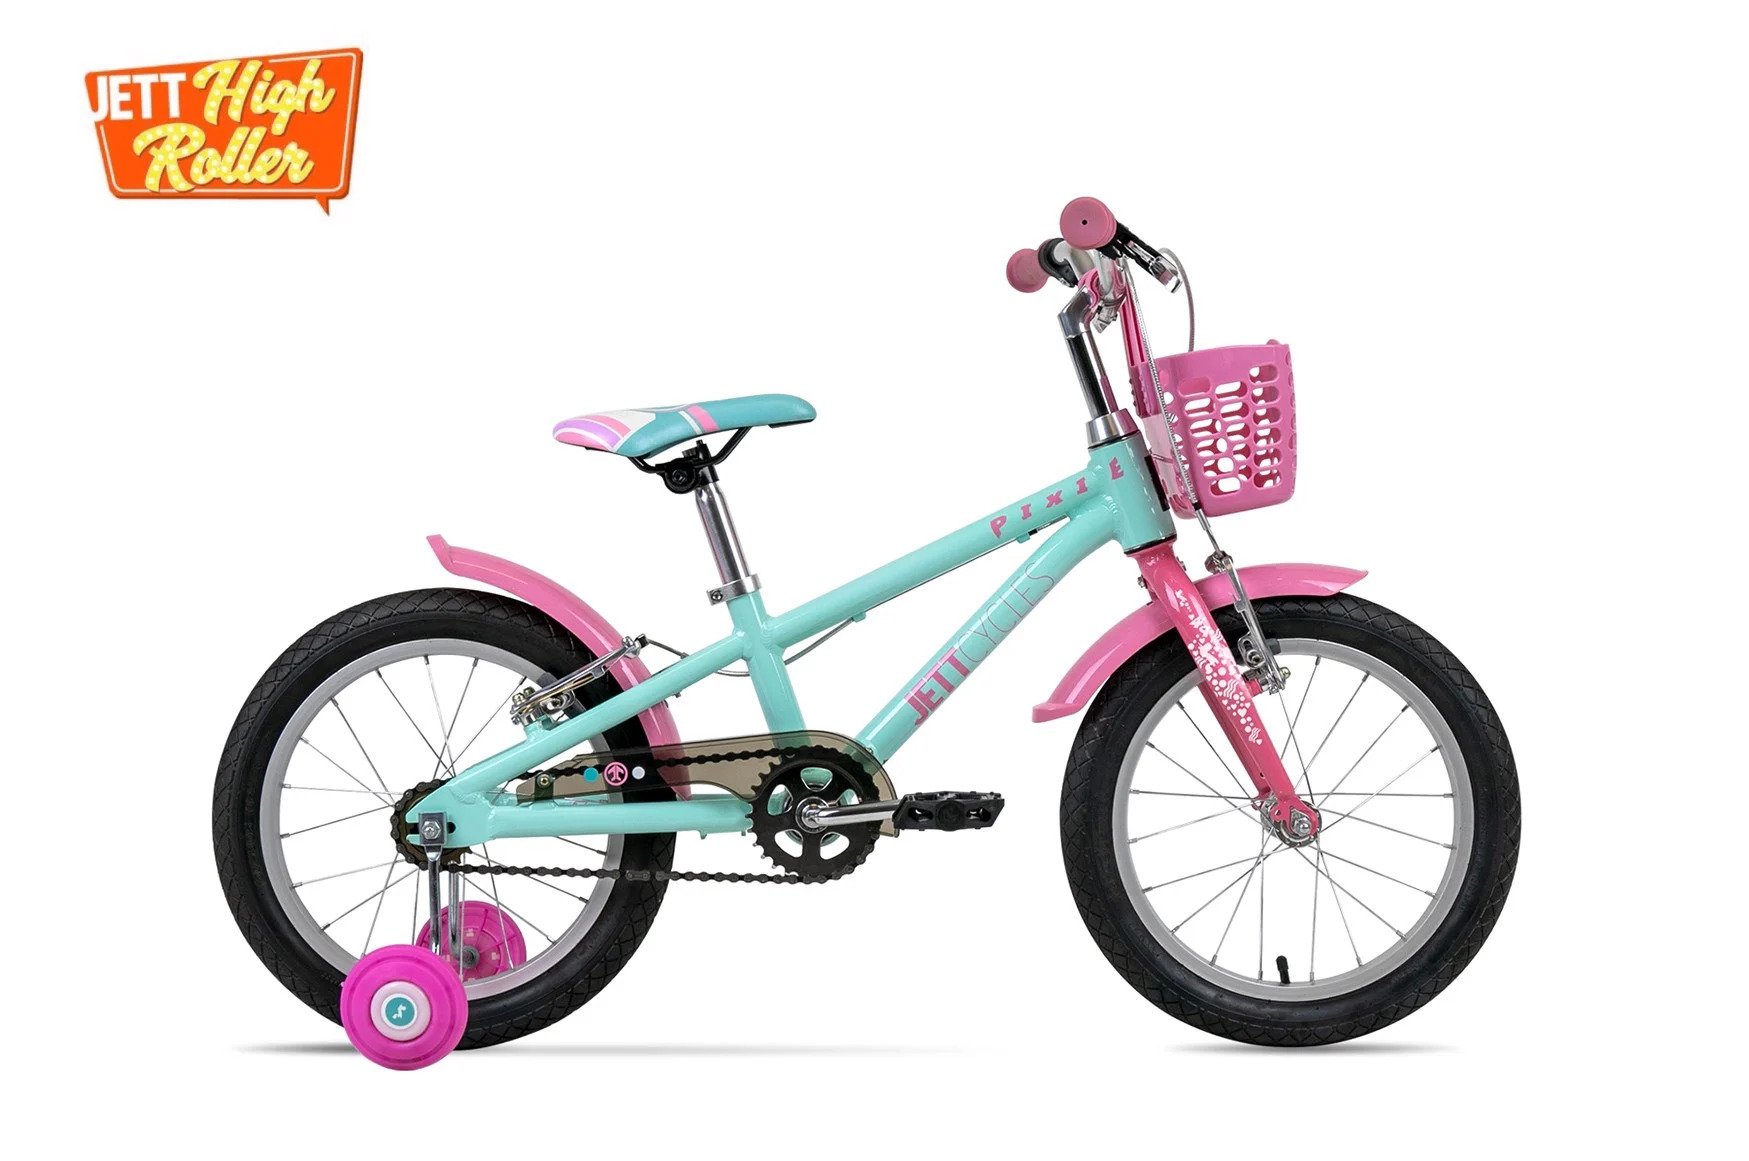 Xe đạp trẻ em Jett Cycles Pixie 161920 màu xanh